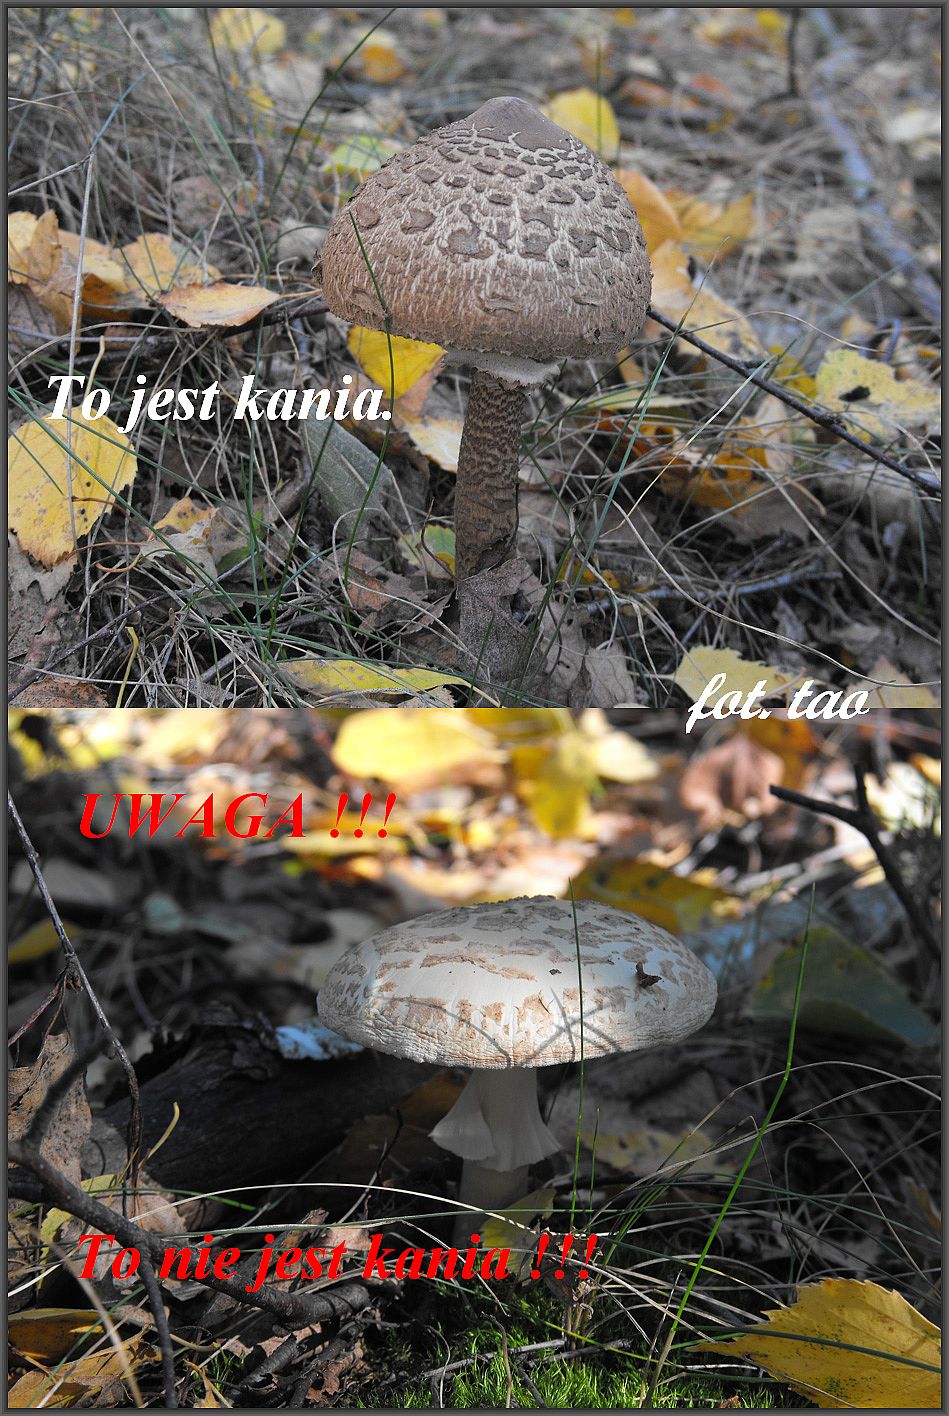 Czas na grzyby. W tym sezonie w okolicznych lasach jest wysyp kani, zbiera czy nie zbiera? Oczywicie zbiera, bo kania to jeden z najsmaczniejszych  grzybw, ale nie myli z muchomorem, patrz na foto. Lasy w Walerianowie k/Sierpca, 4.10.2013 r.